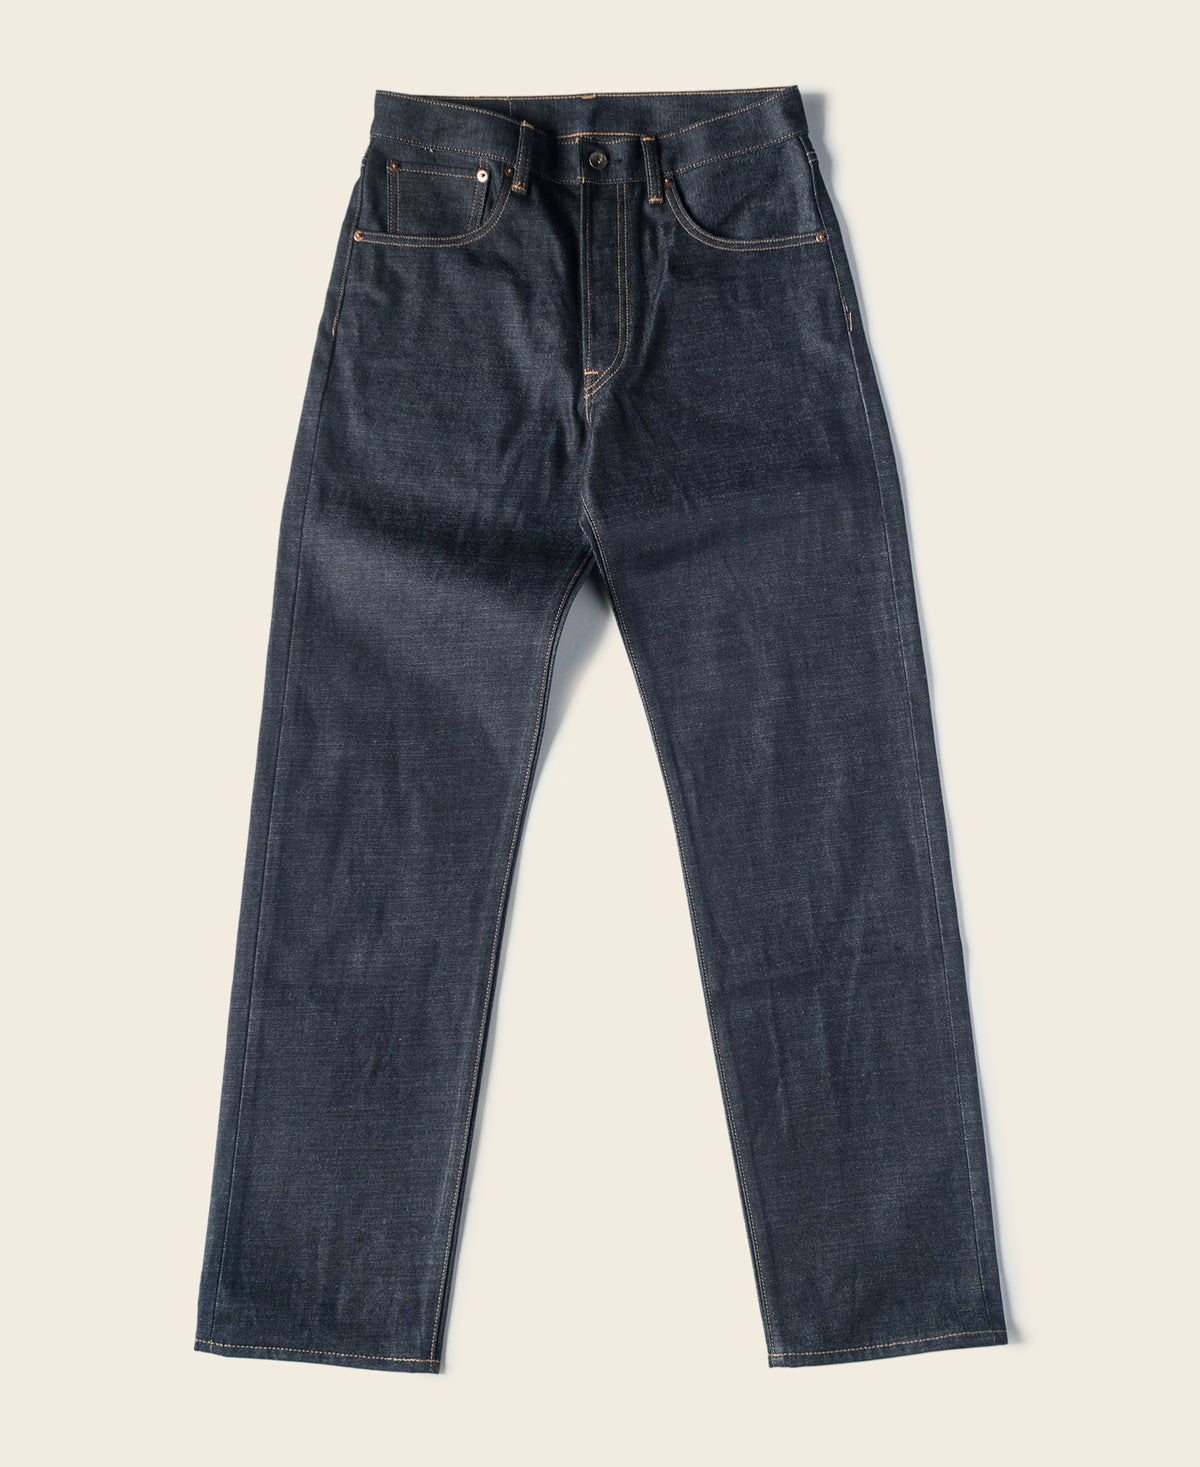 Lot 602 1969 Model Selvedge Denim Jeans